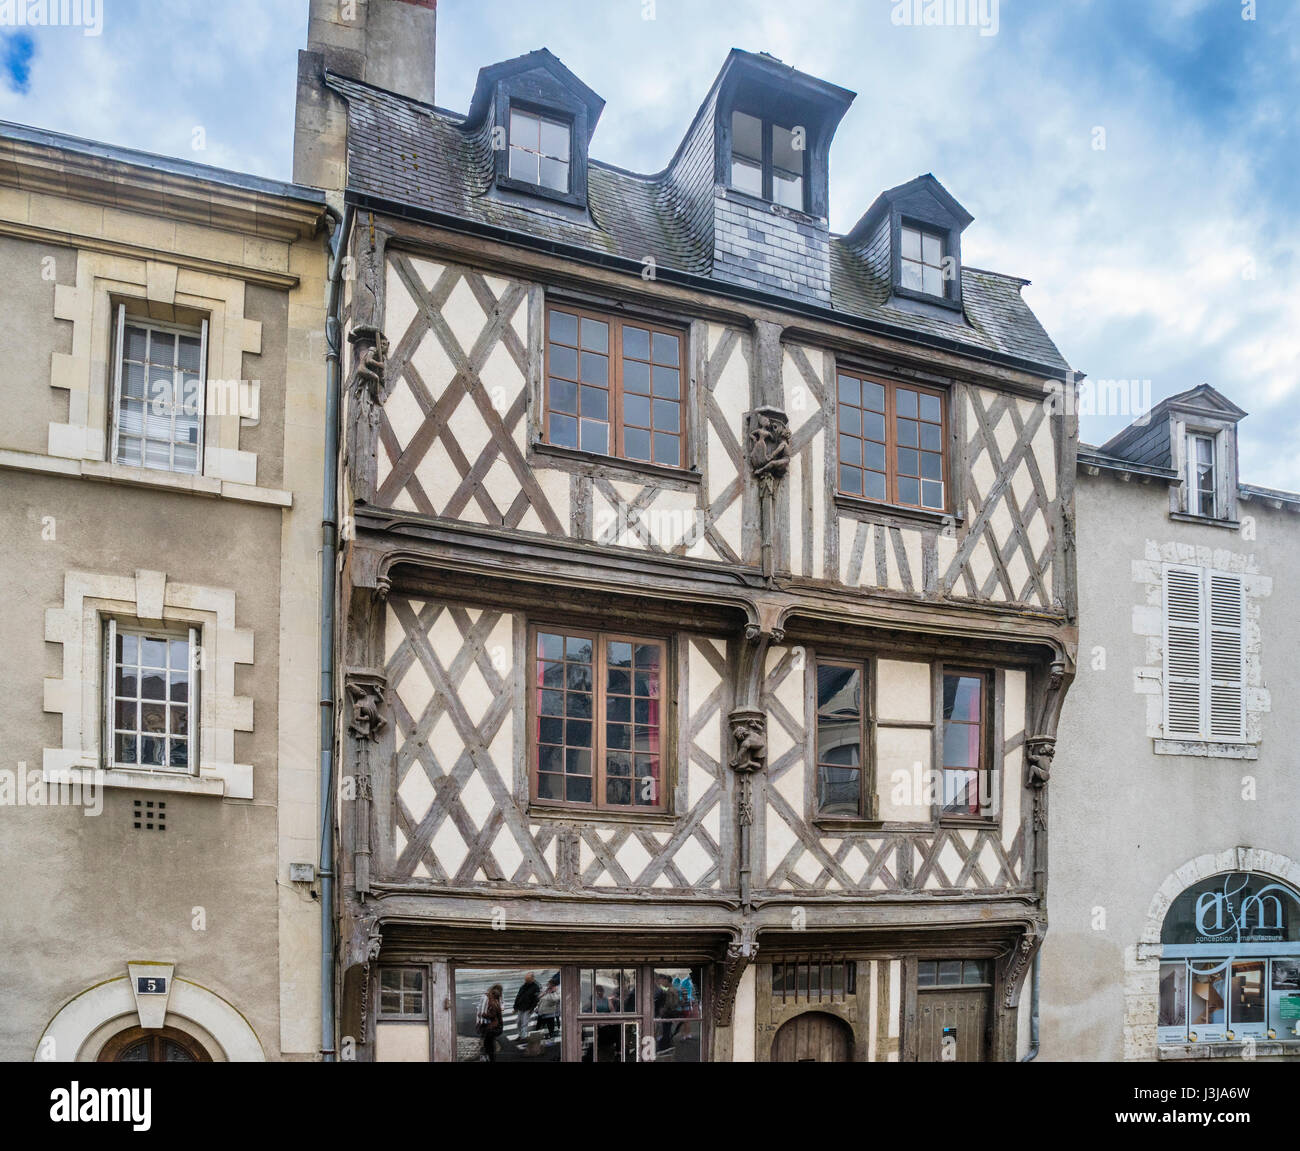 La France, l'Center-Val de Loire, de Blois, La maison des acrobates (l'acrobat's house), historique maison à pans de bois dans les vieux quartiers de Blois Banque D'Images